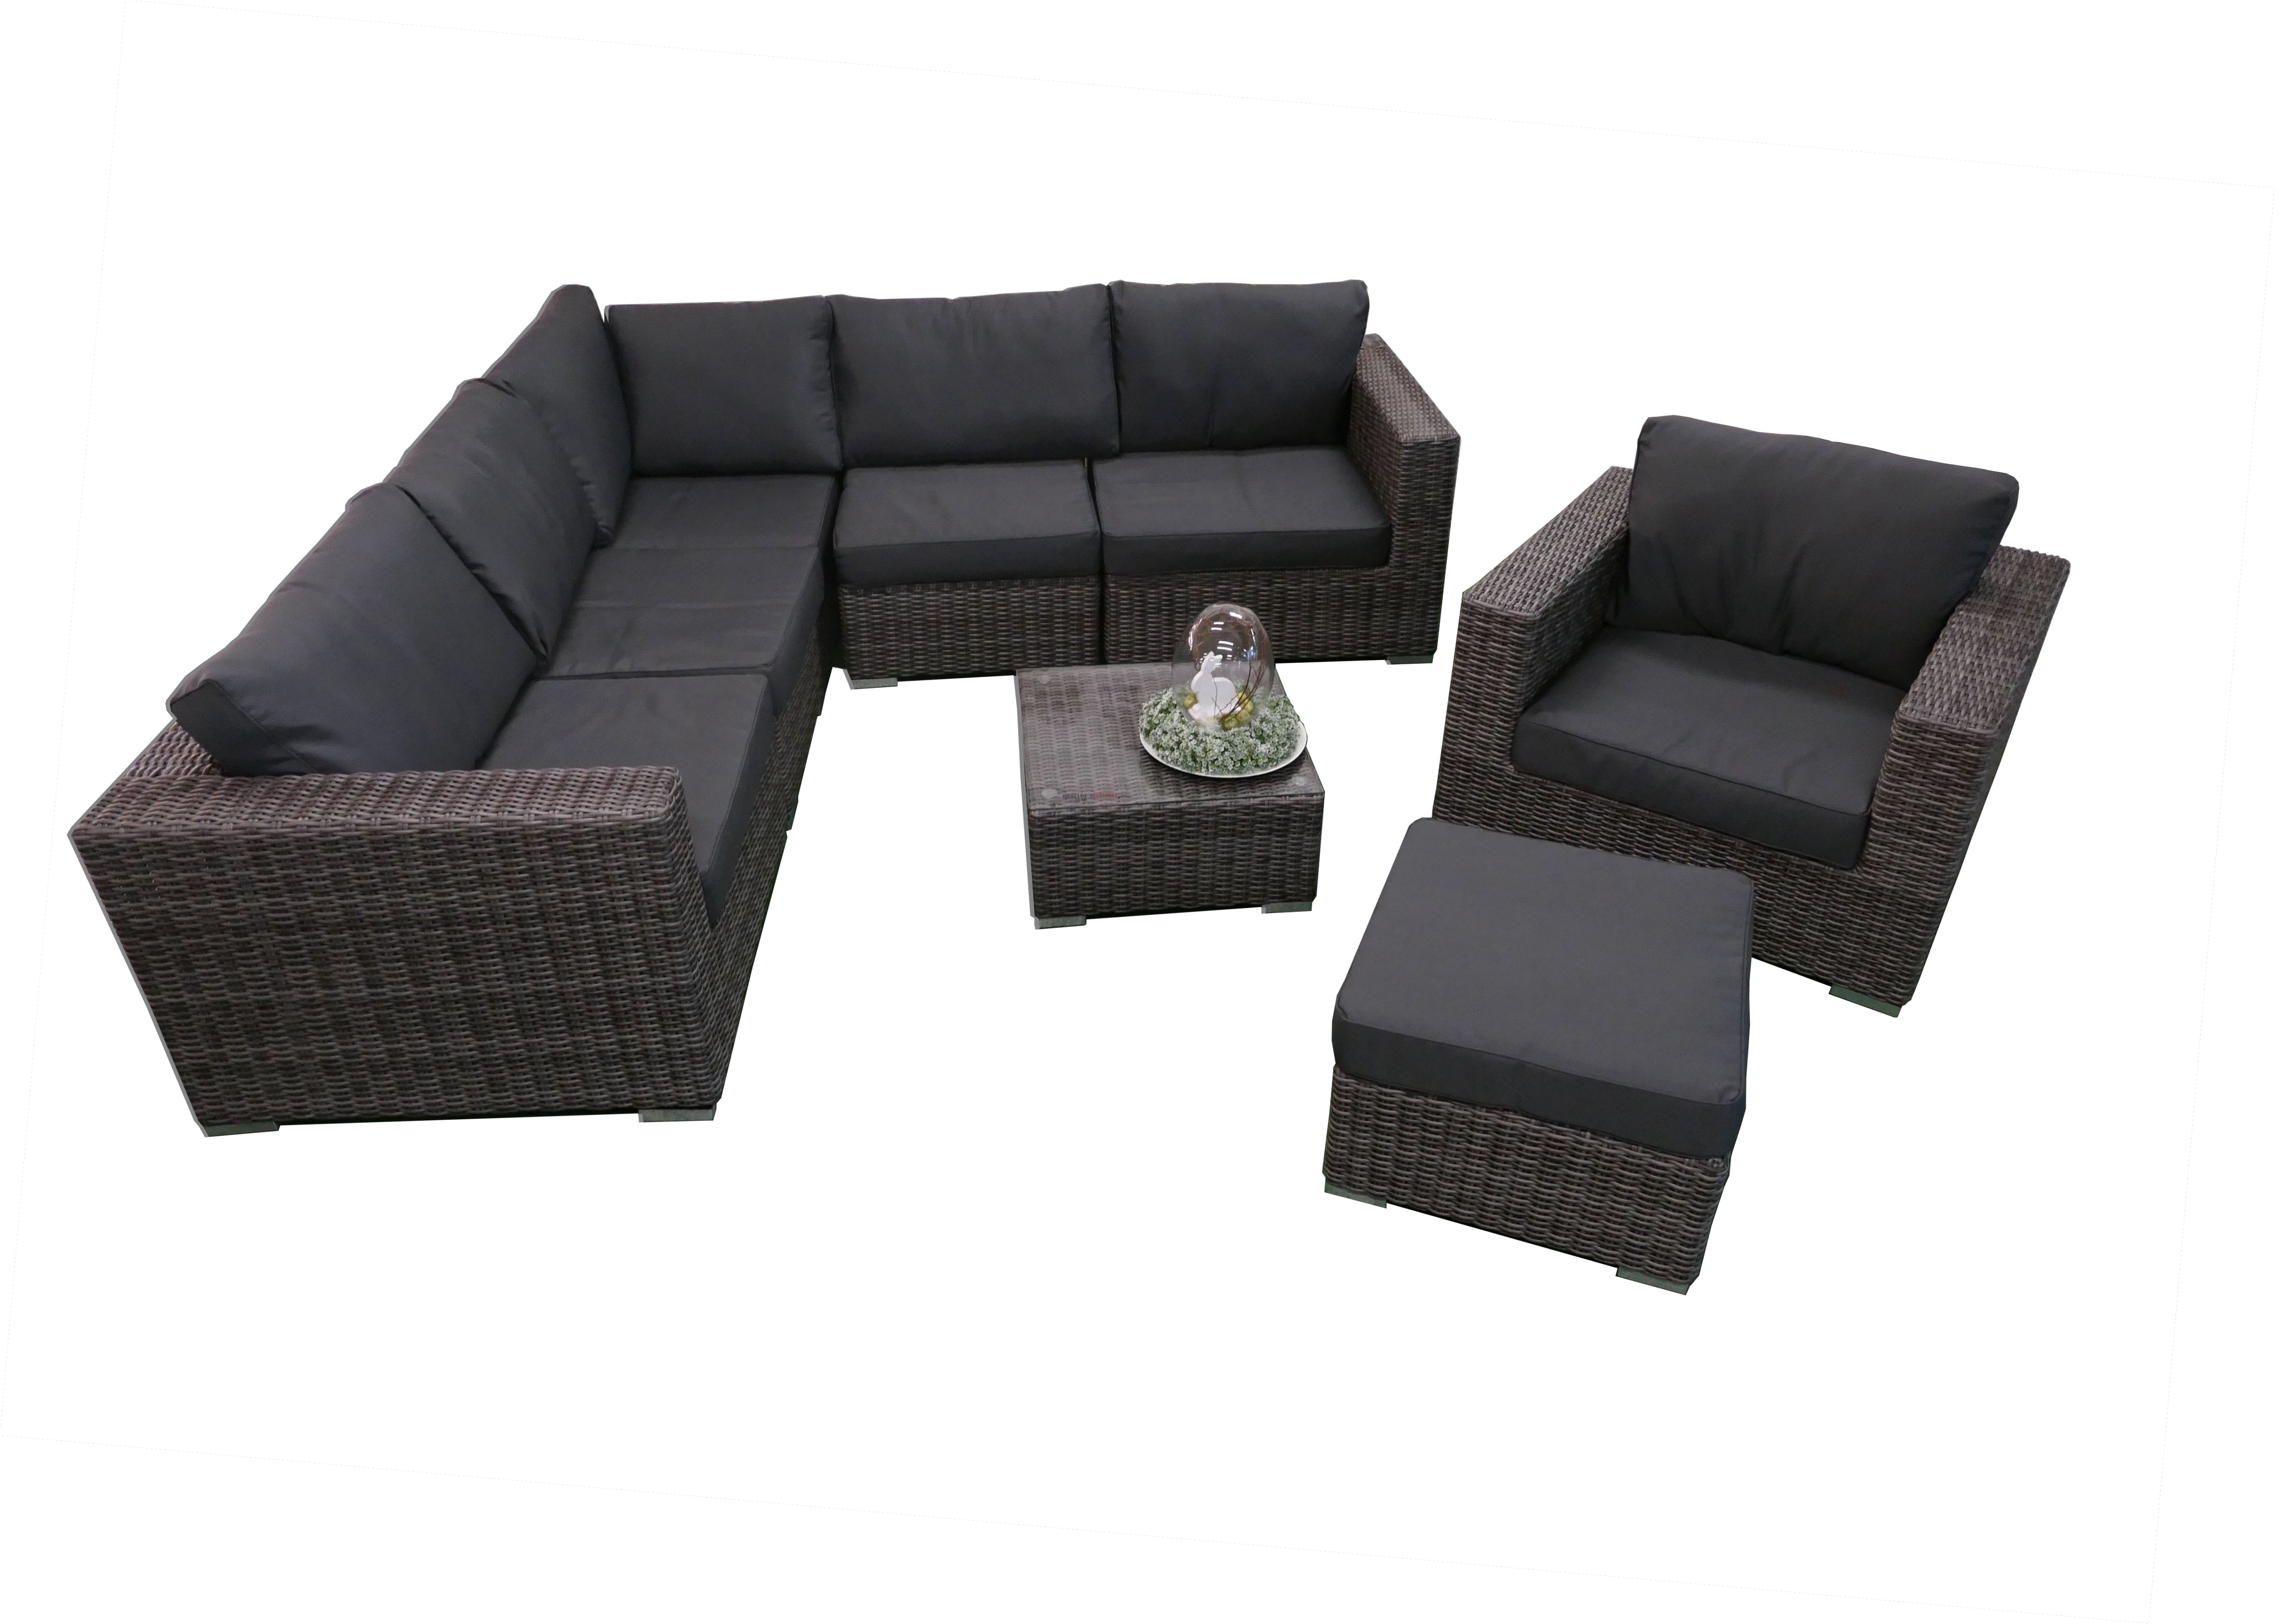 new city furniture naples wicker bedroom set best luxuria¶s wicker outdoor sofa 0d patio design